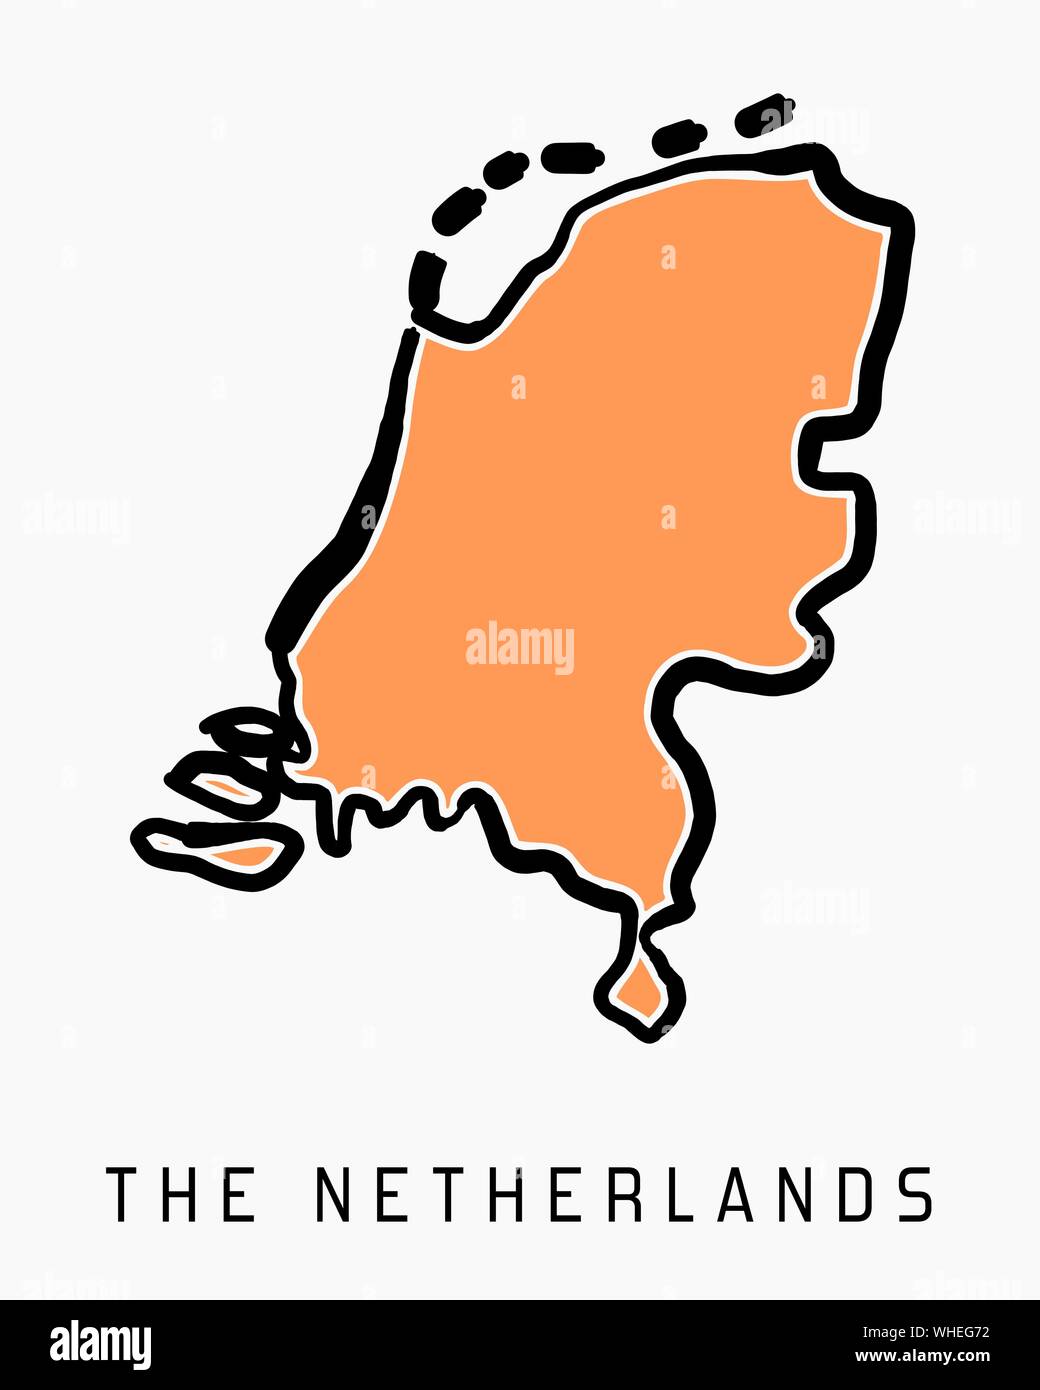 Die Niederlande Karte outline-glatten vereinfachte Land formen Karte Vektor. Stock Vektor